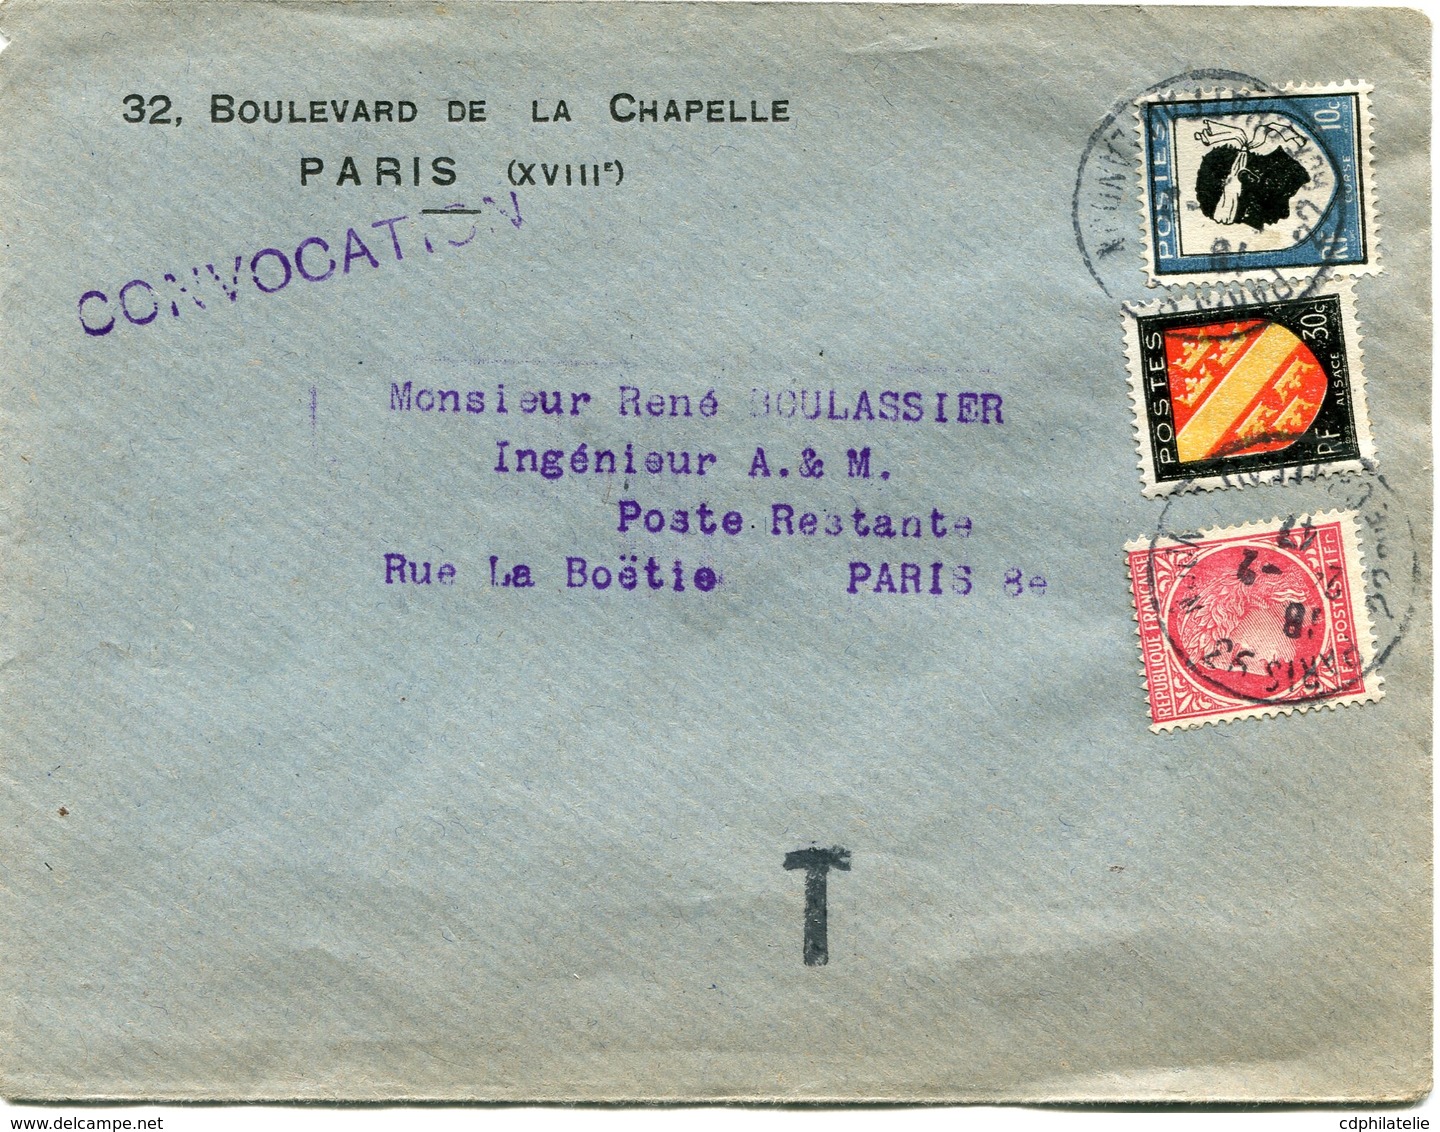 FRANCE LETTRE DEPART PARIS 24-2-47 RUE CHATEAU LANDON TAXEE EN POSTE RESTANTE PARIS 25-2-47 R. LA BOETIE - 1945-47 Cérès De Mazelin